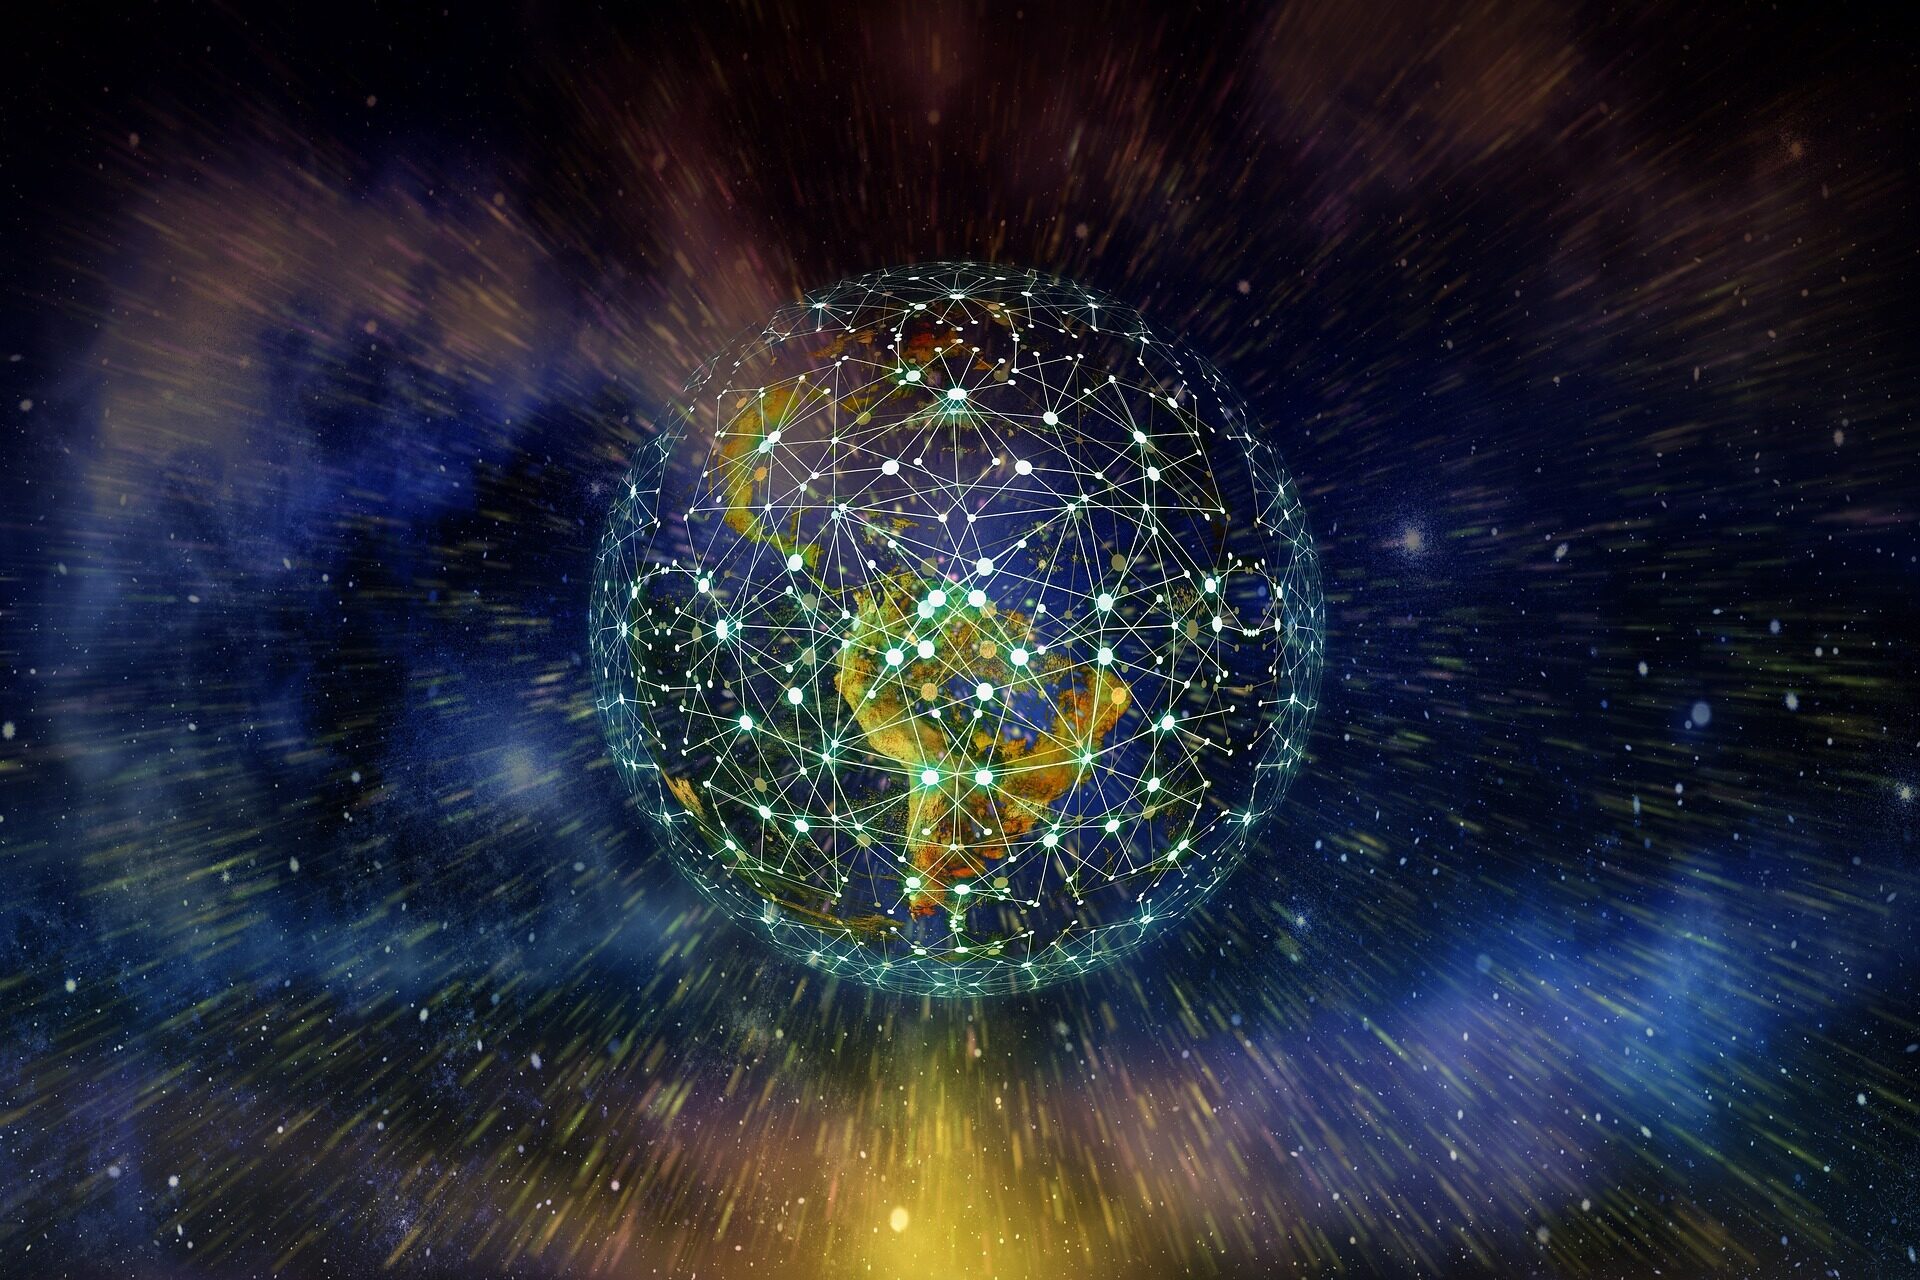 Ein Globus aus Synapsen, der Kontinente umschließt als Veranschaulichung für weltweites Vernetzen und Fördern, für Digitalisierung.